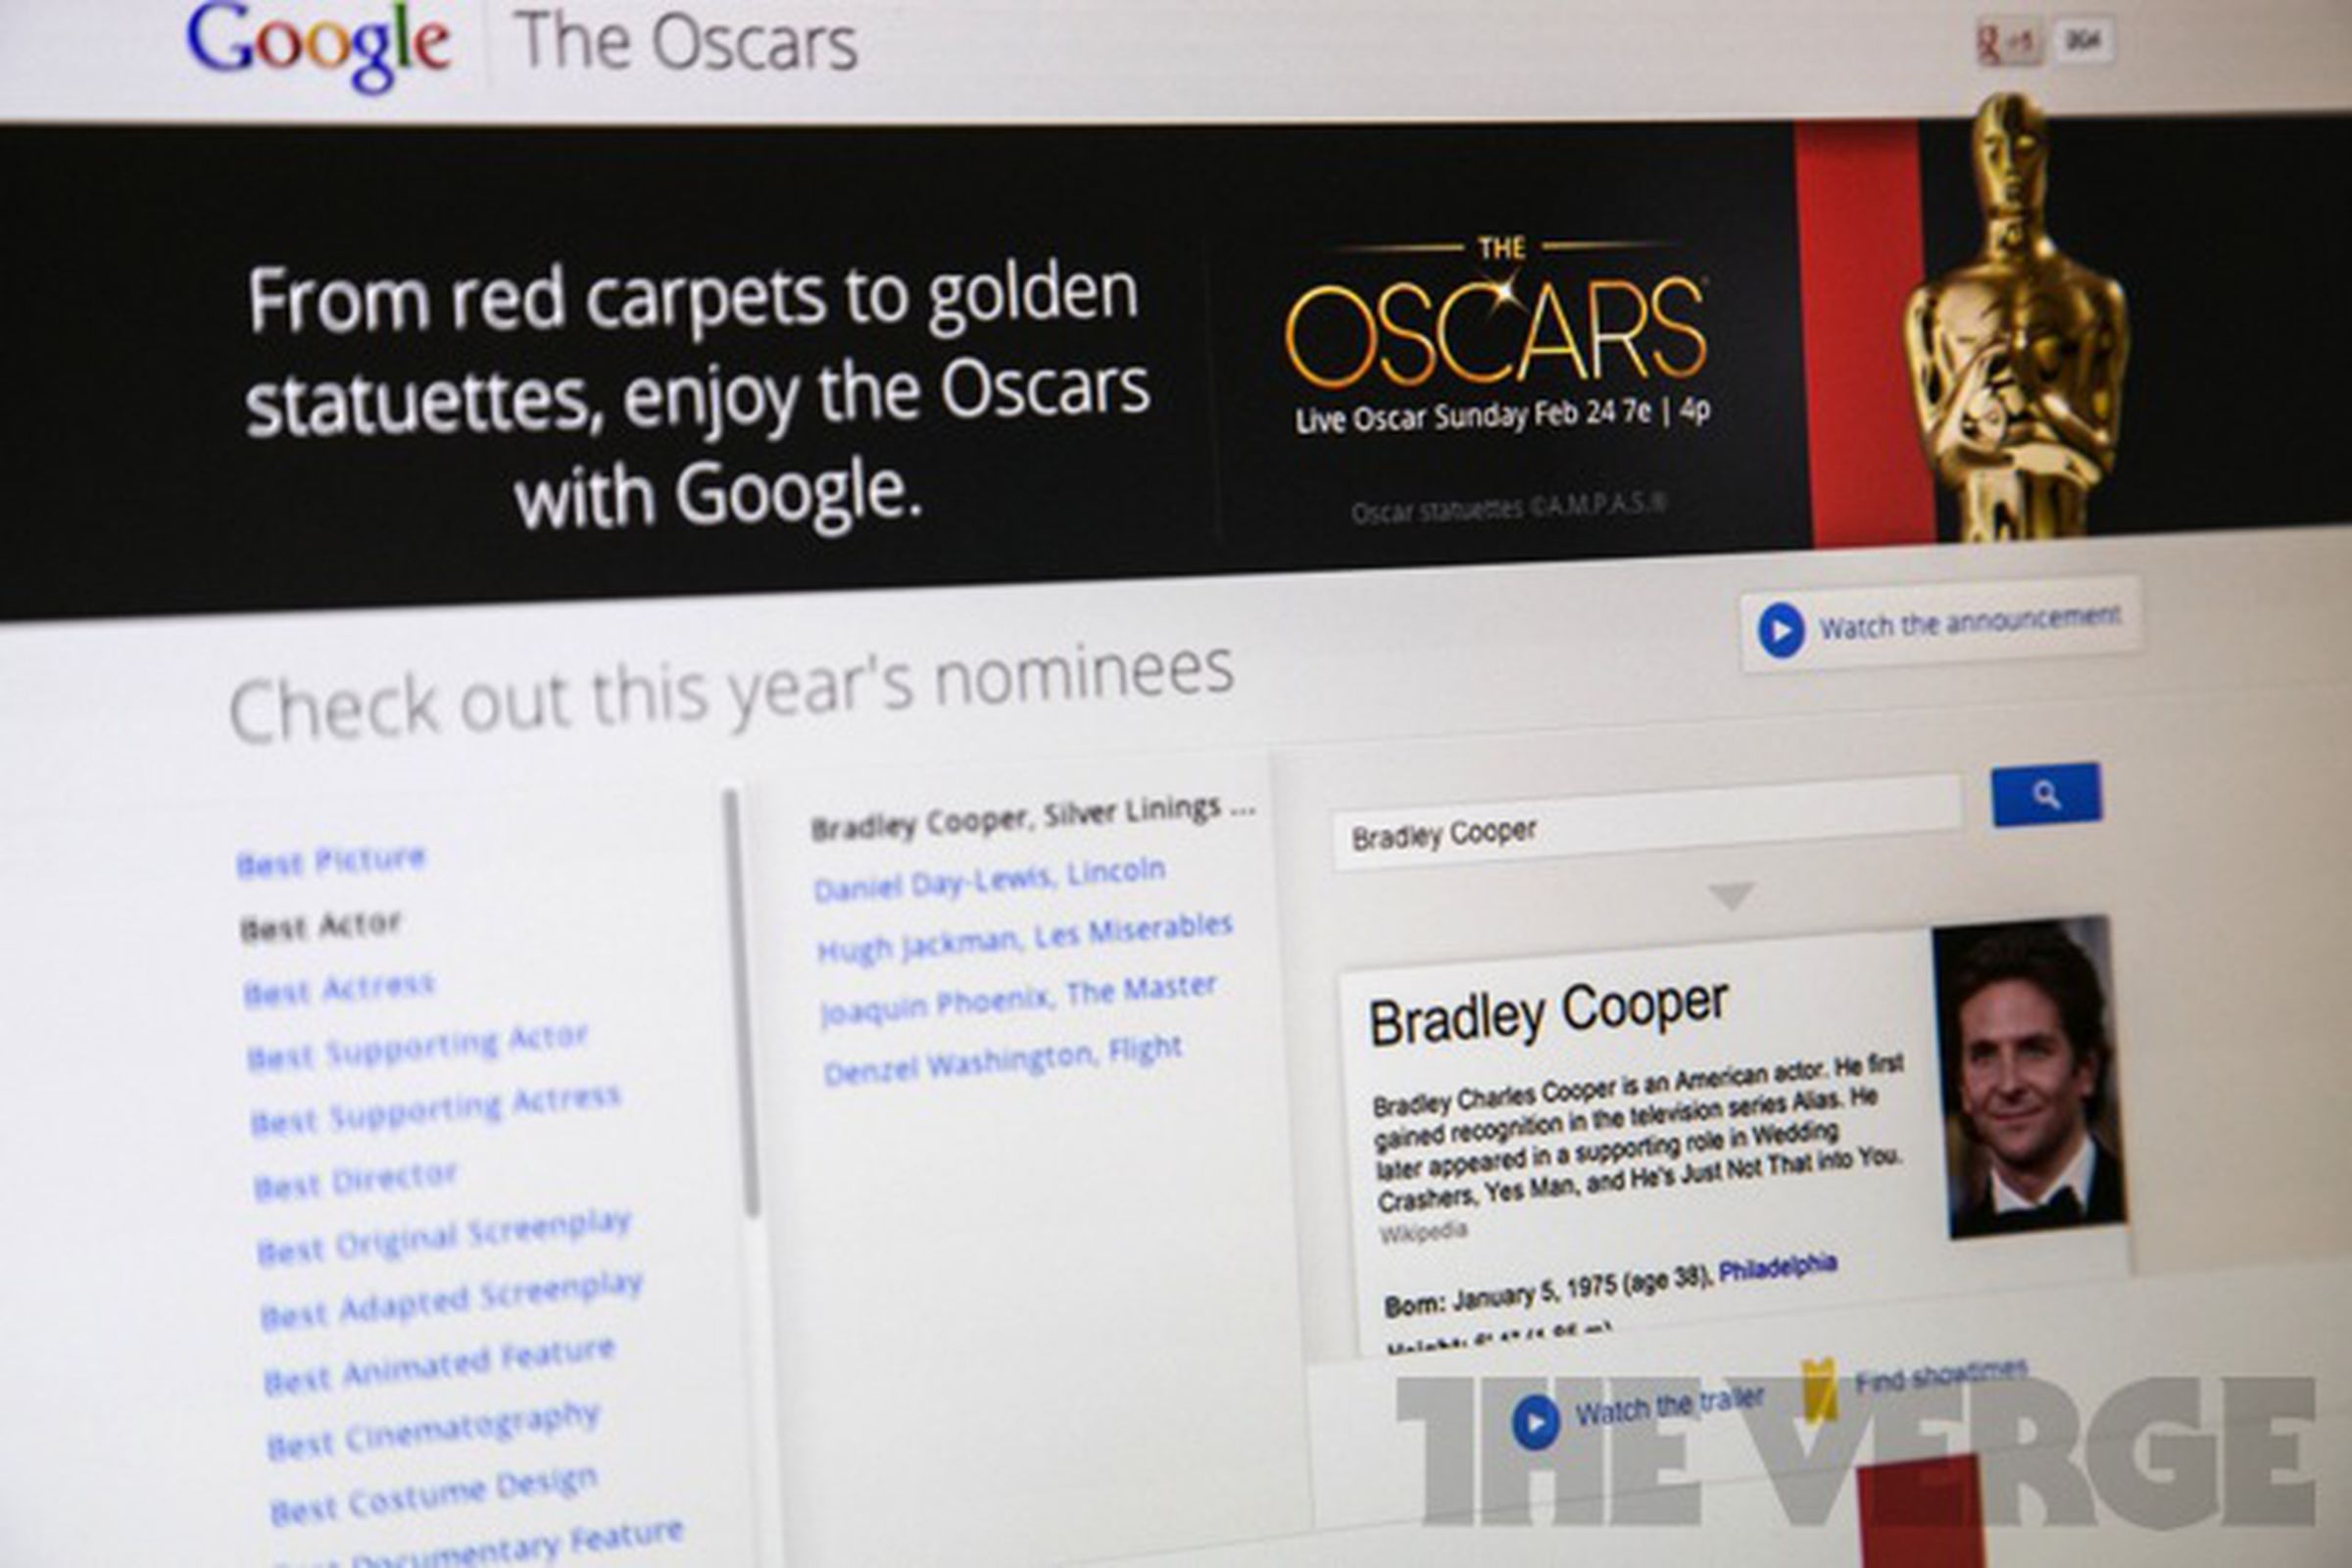 Google Oscars portal